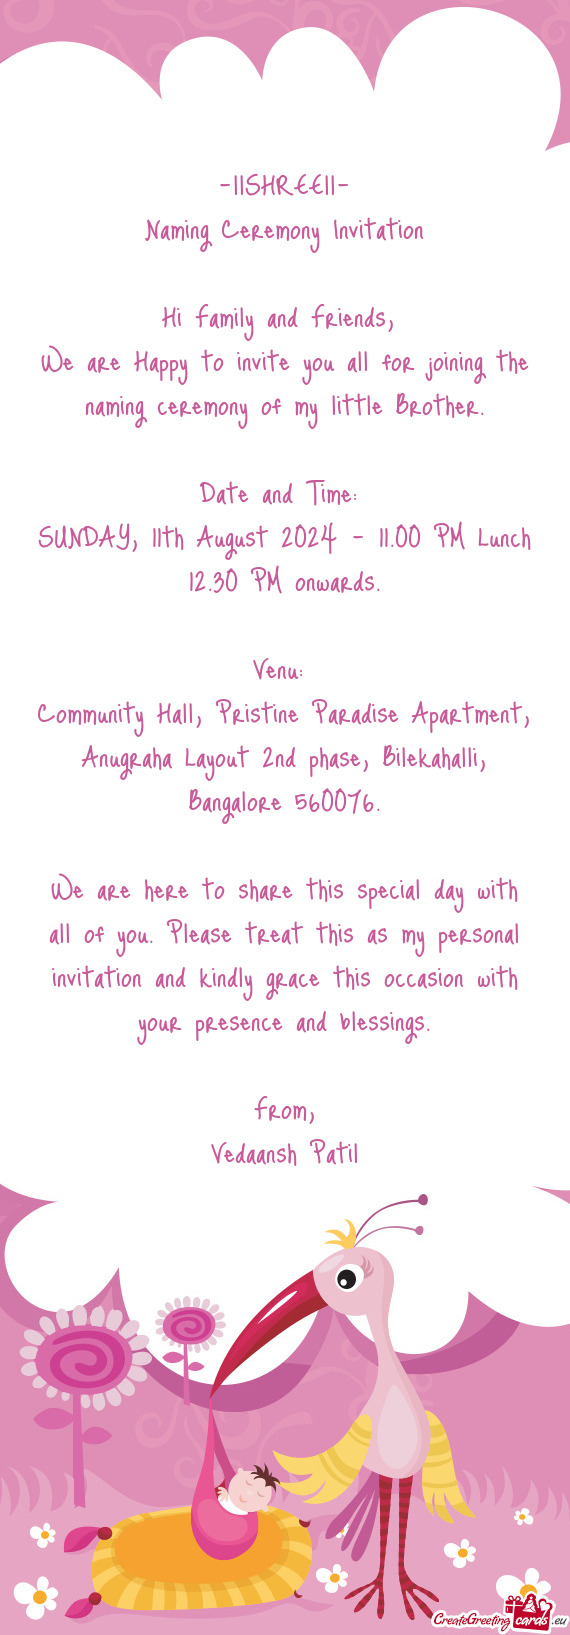 Community Hall, Pristine Paradise Apartment, Anugraha Layout 2nd phase, Bilekahalli, Bangalore 56007